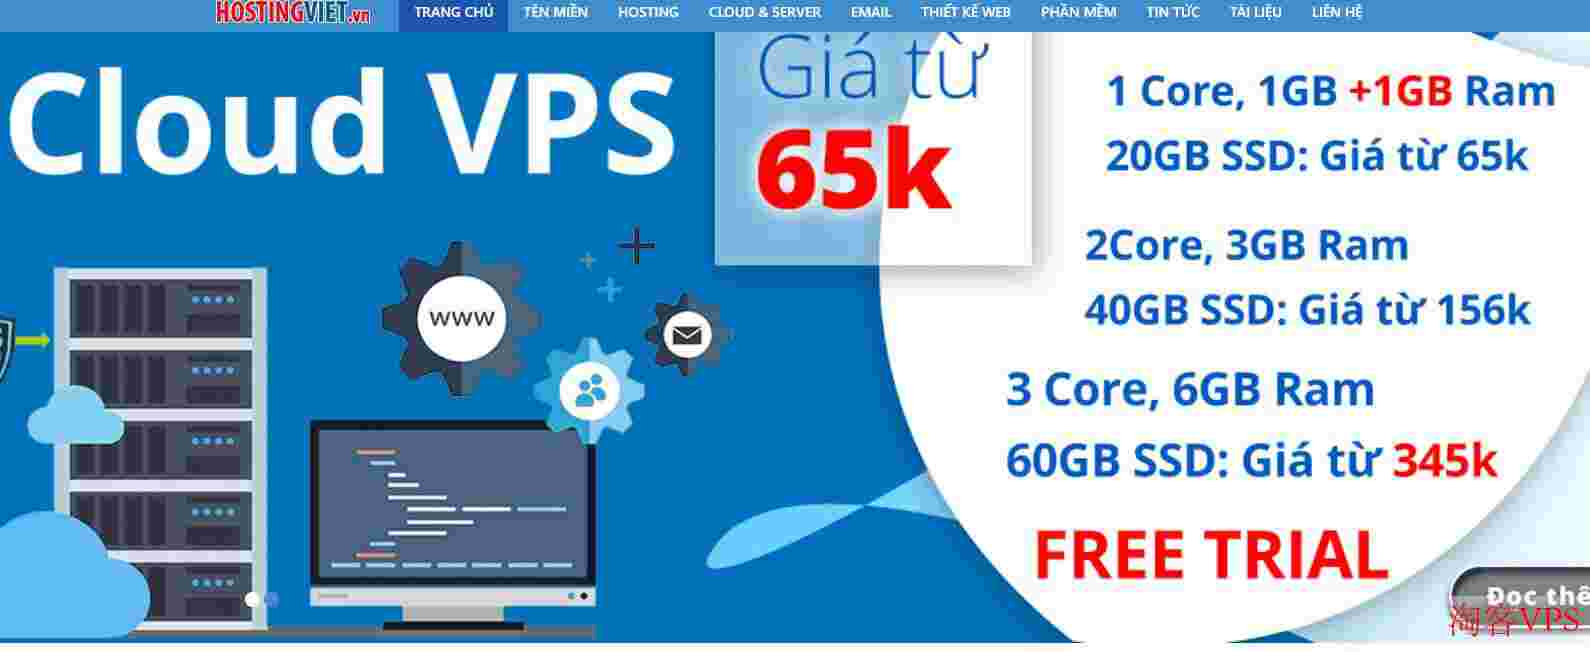 HostingViet新年优惠：越南VPS6折年付$26起，150M带宽+不限流量，越南原生IP